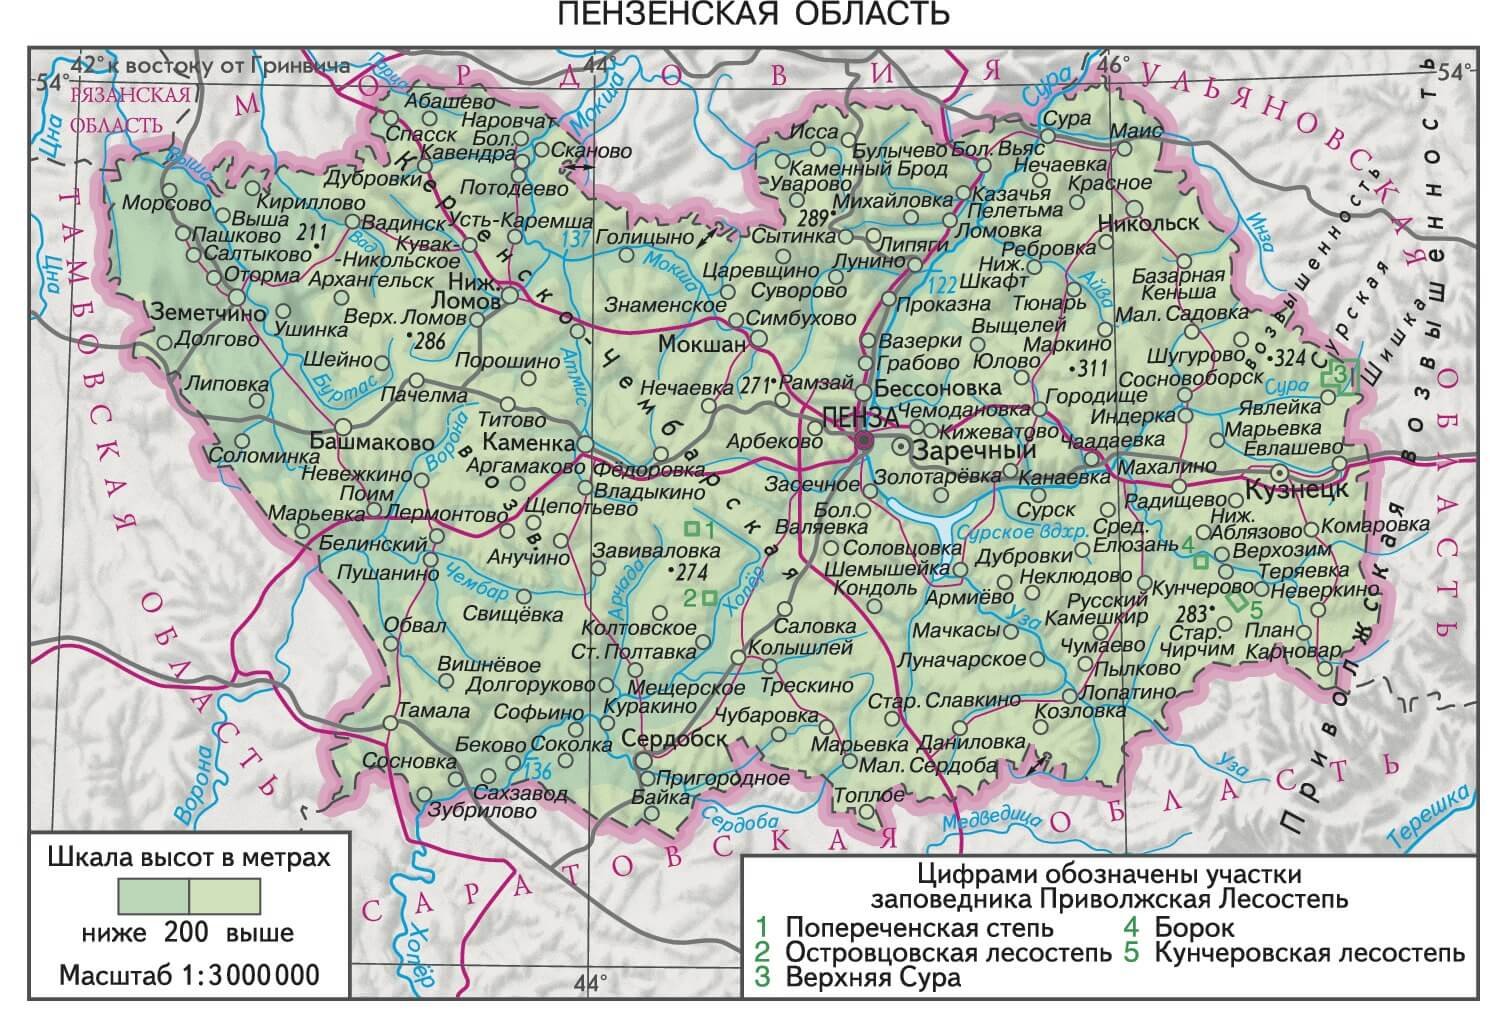 Пенза местоположение. Карта Пензенской области. Карта Пензенской области по районам с дорогами. Карта Пензенской области с районами подробная. Карта Пензы и Пензенской области.